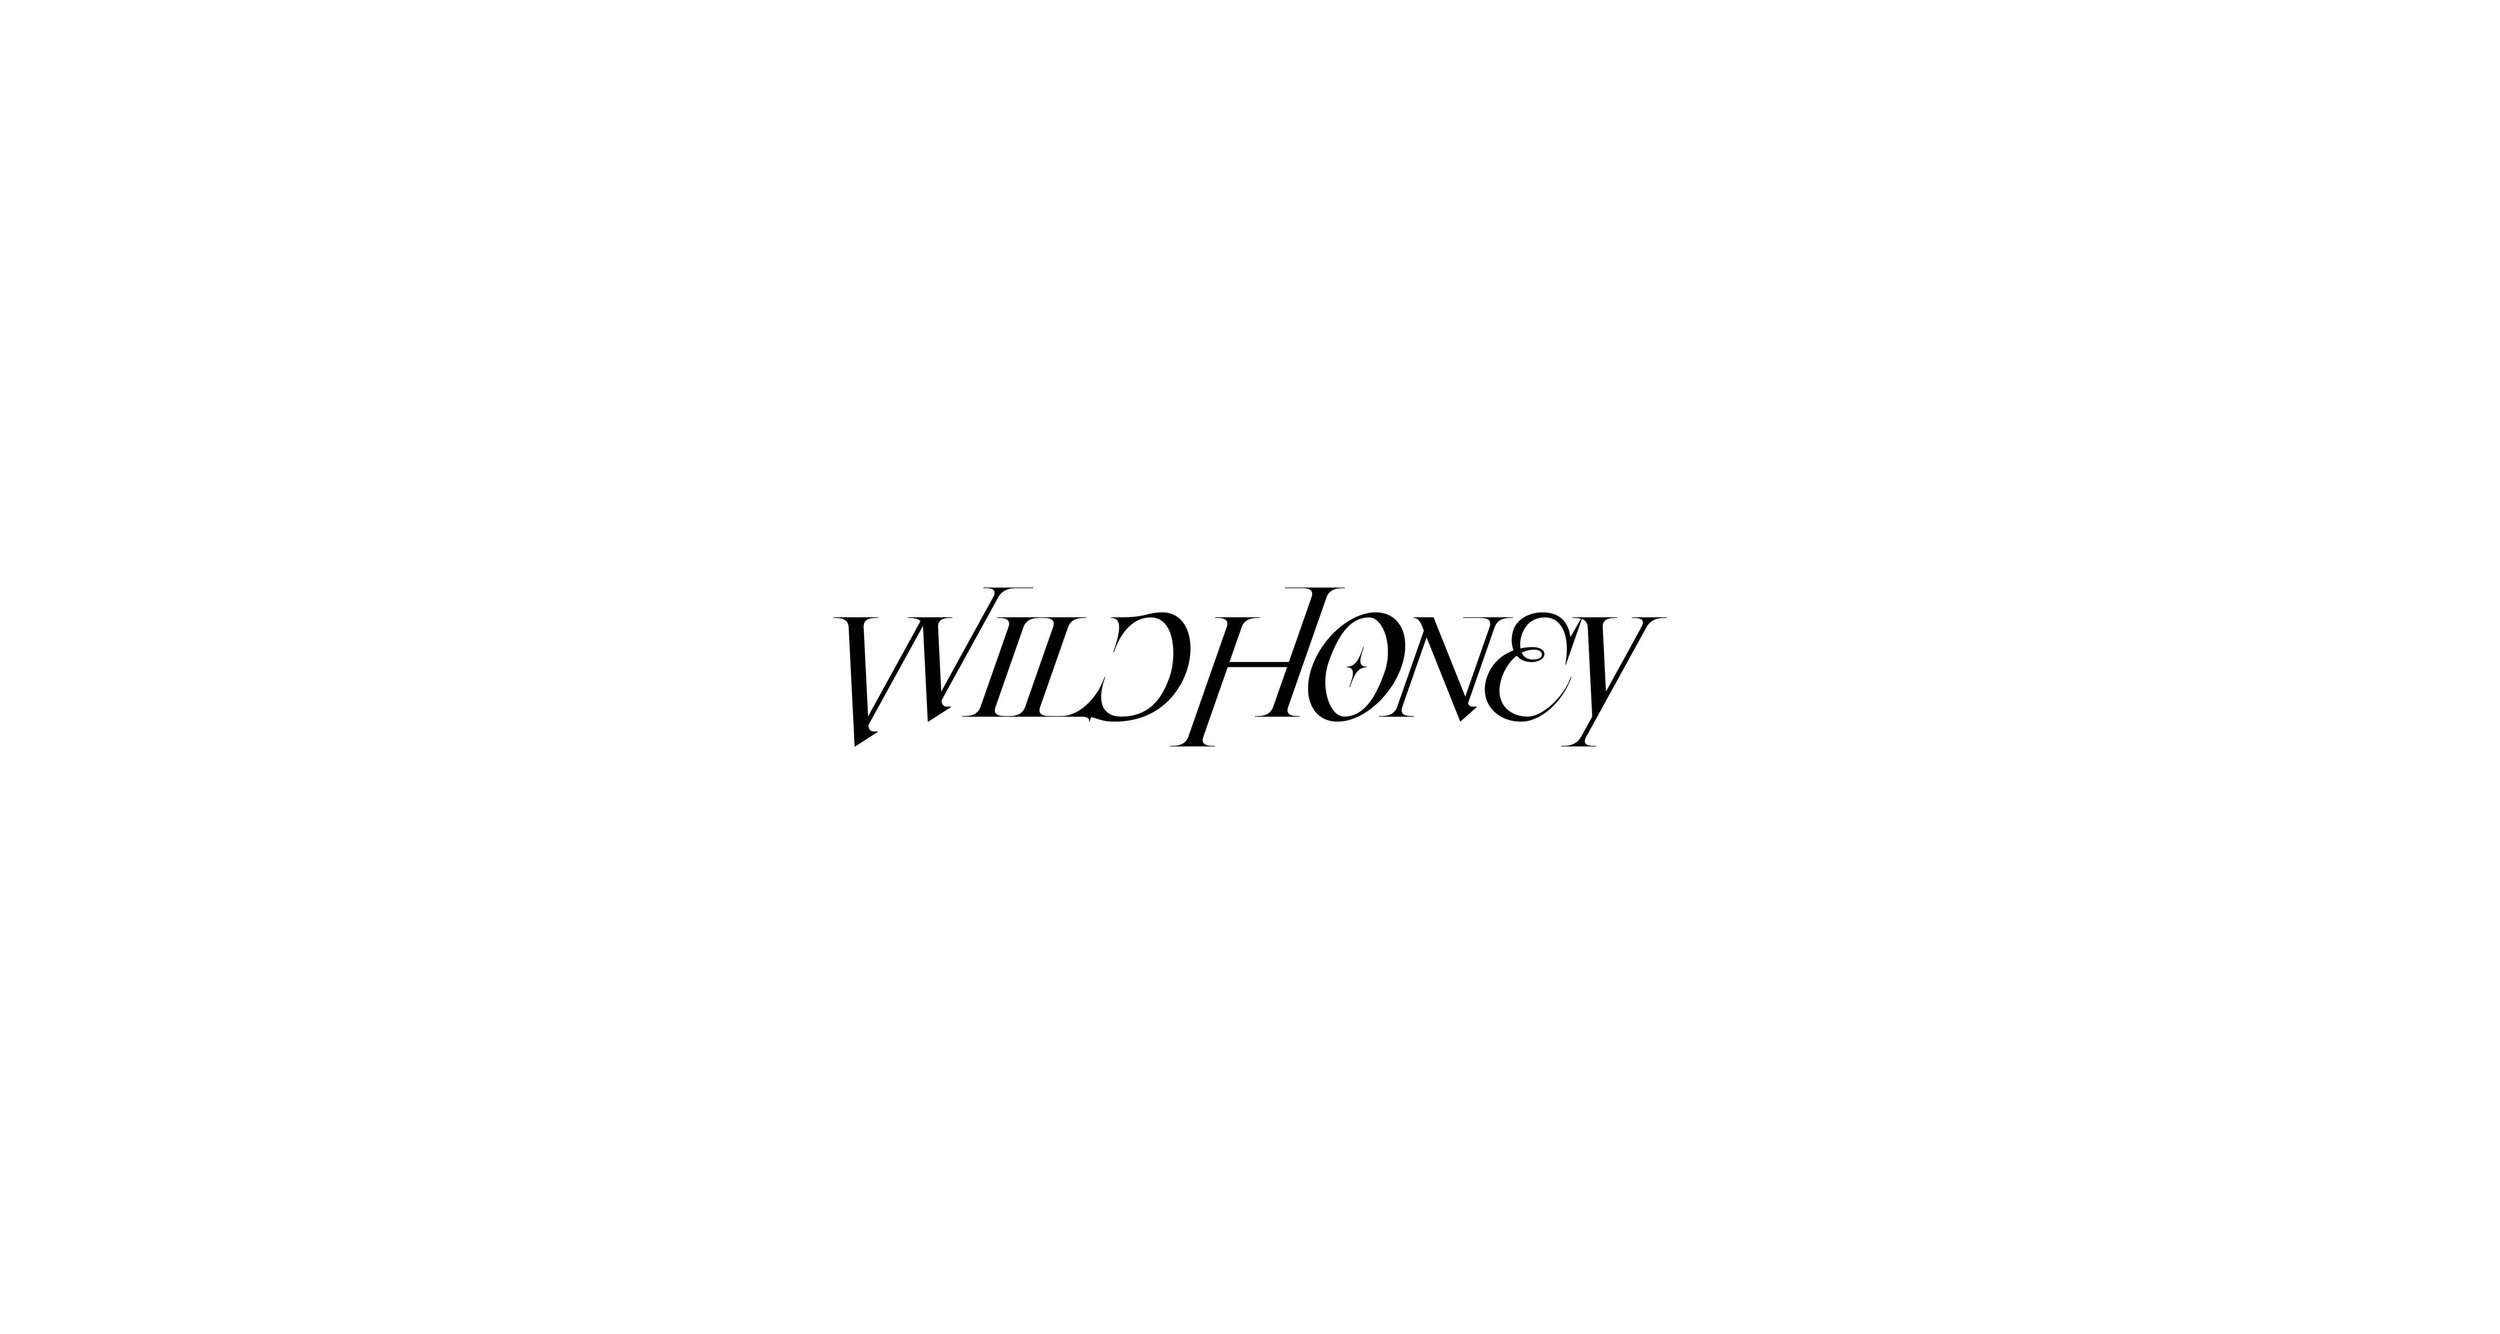 logo-design-branding-san-diego-vortic-11-wild-honey-2